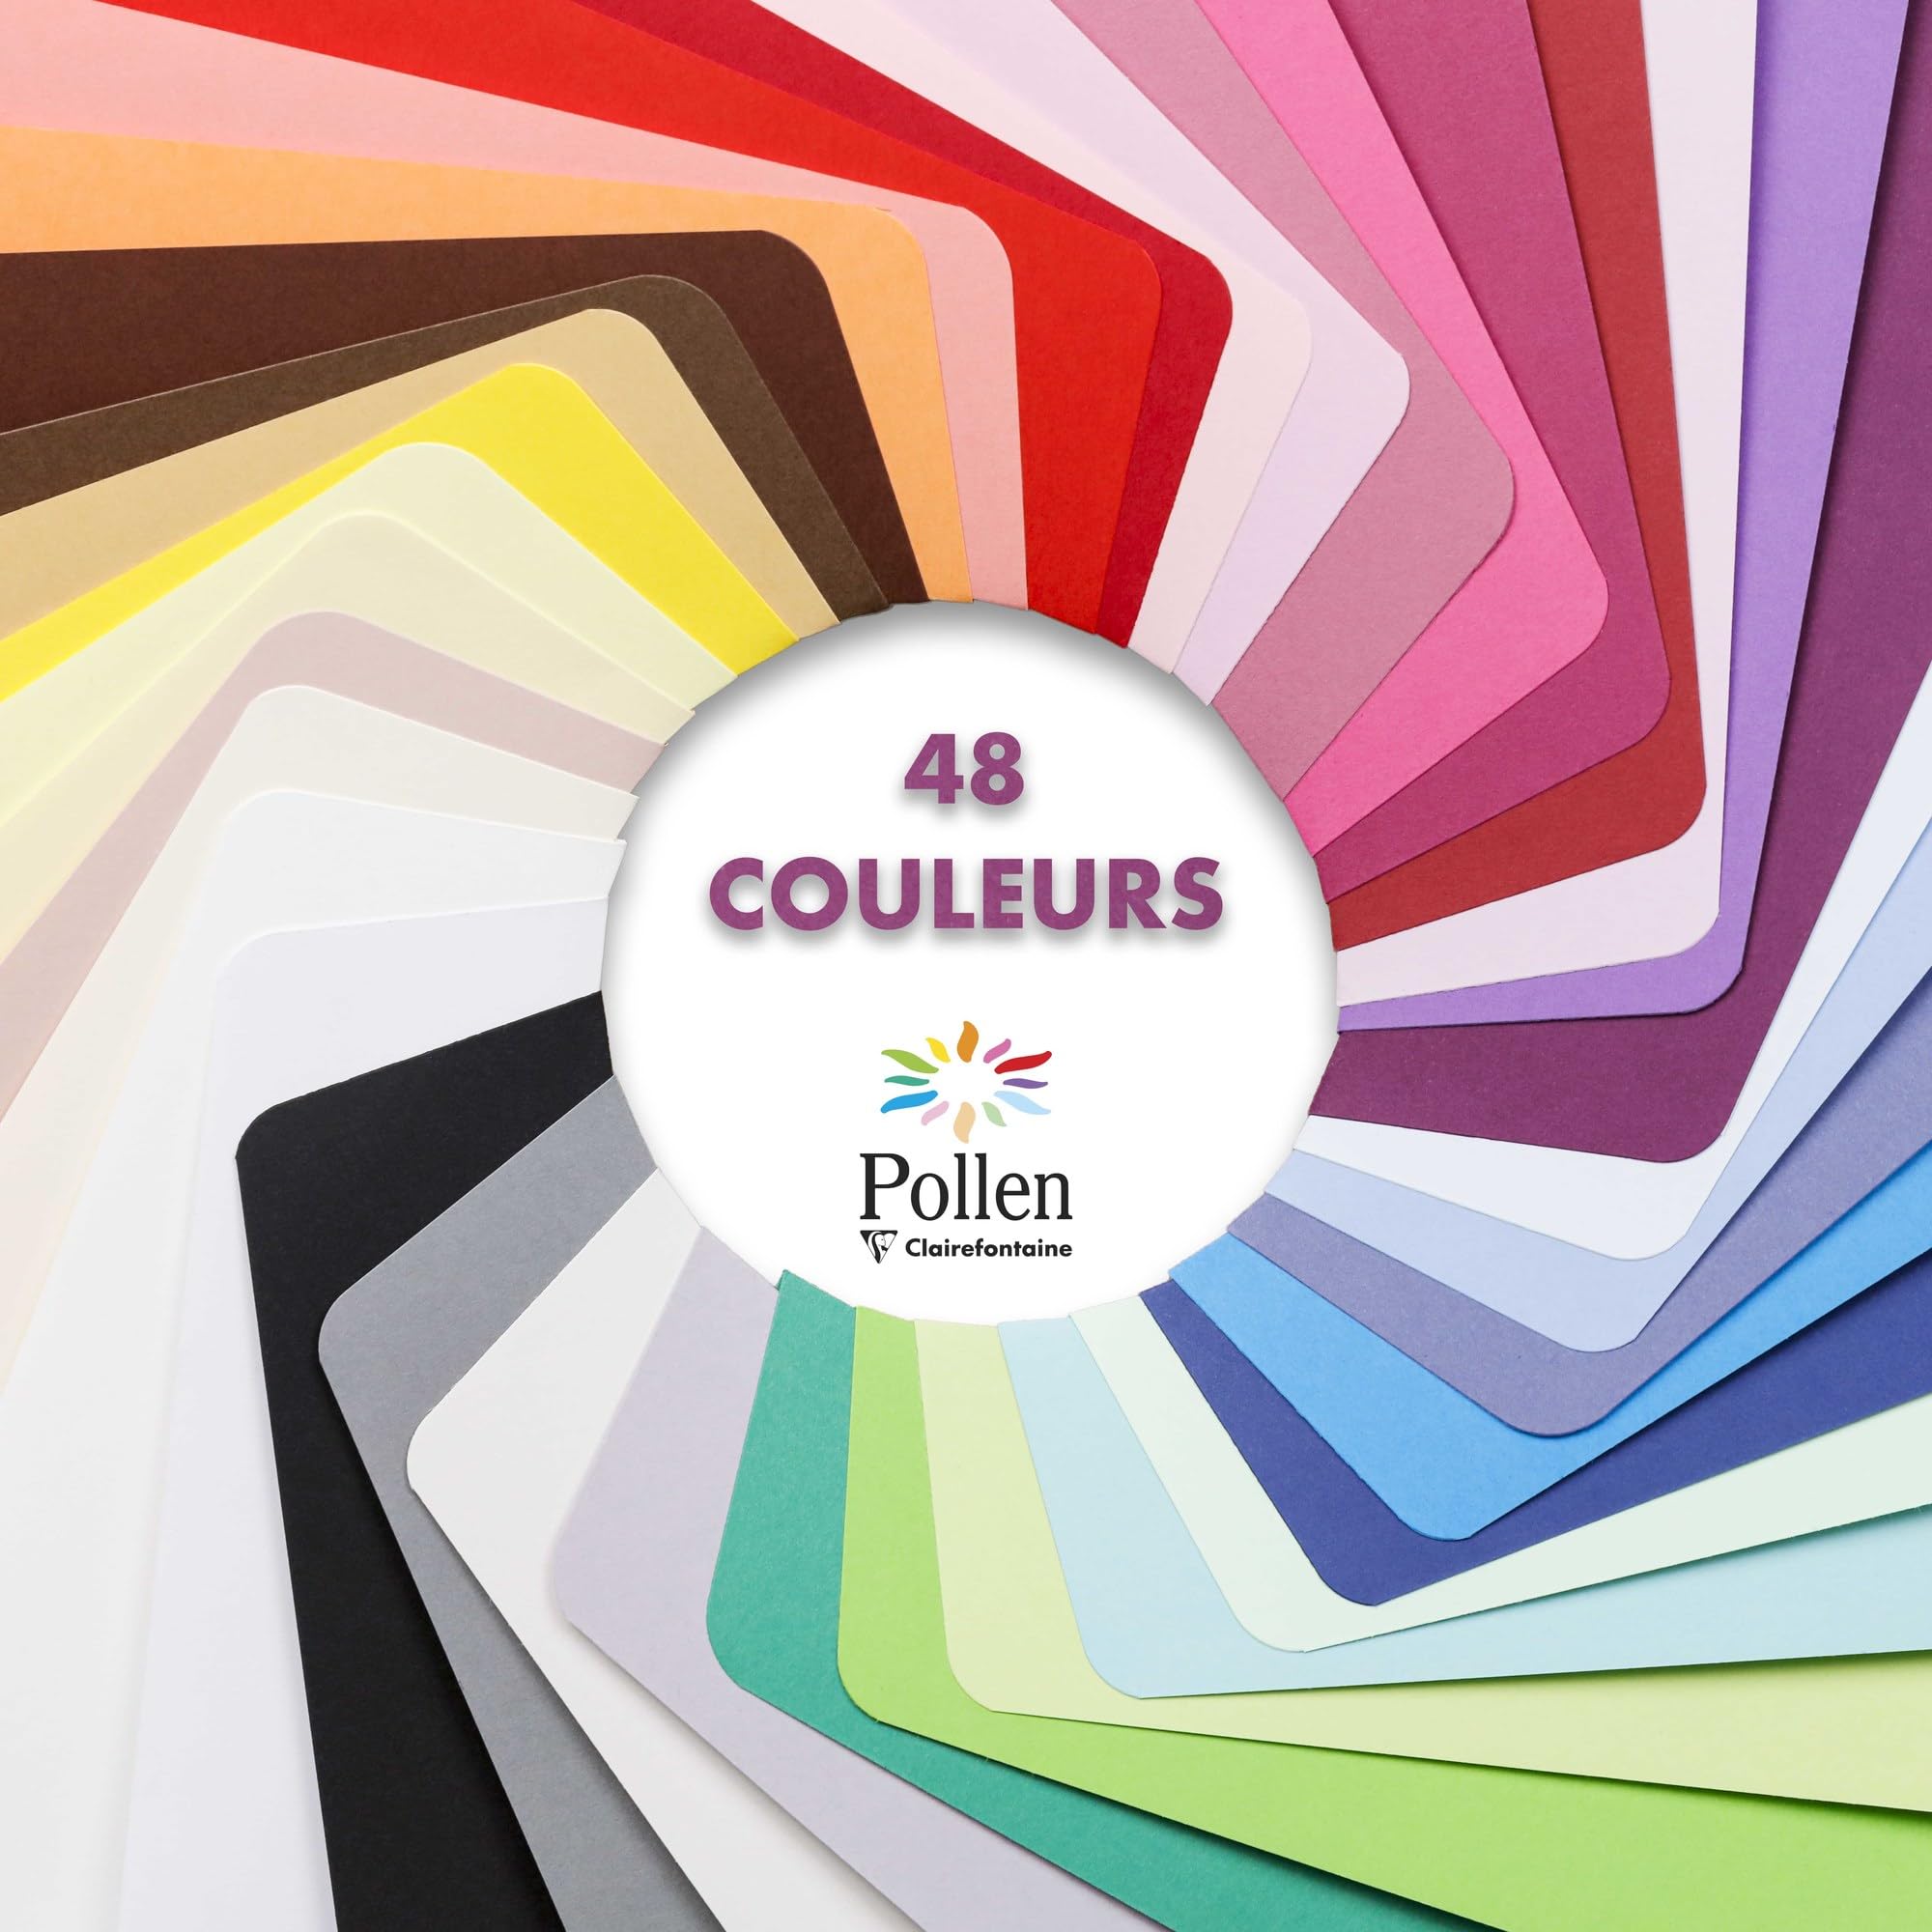 Clairefontaine - Ref 5572C - Pollen Envelopes (Pack of 20) - C5 Sized, 120gsm Paper, Gummed Seal, Inkjet & Laser Printer Compatible, Acid Free - Intensive Pink